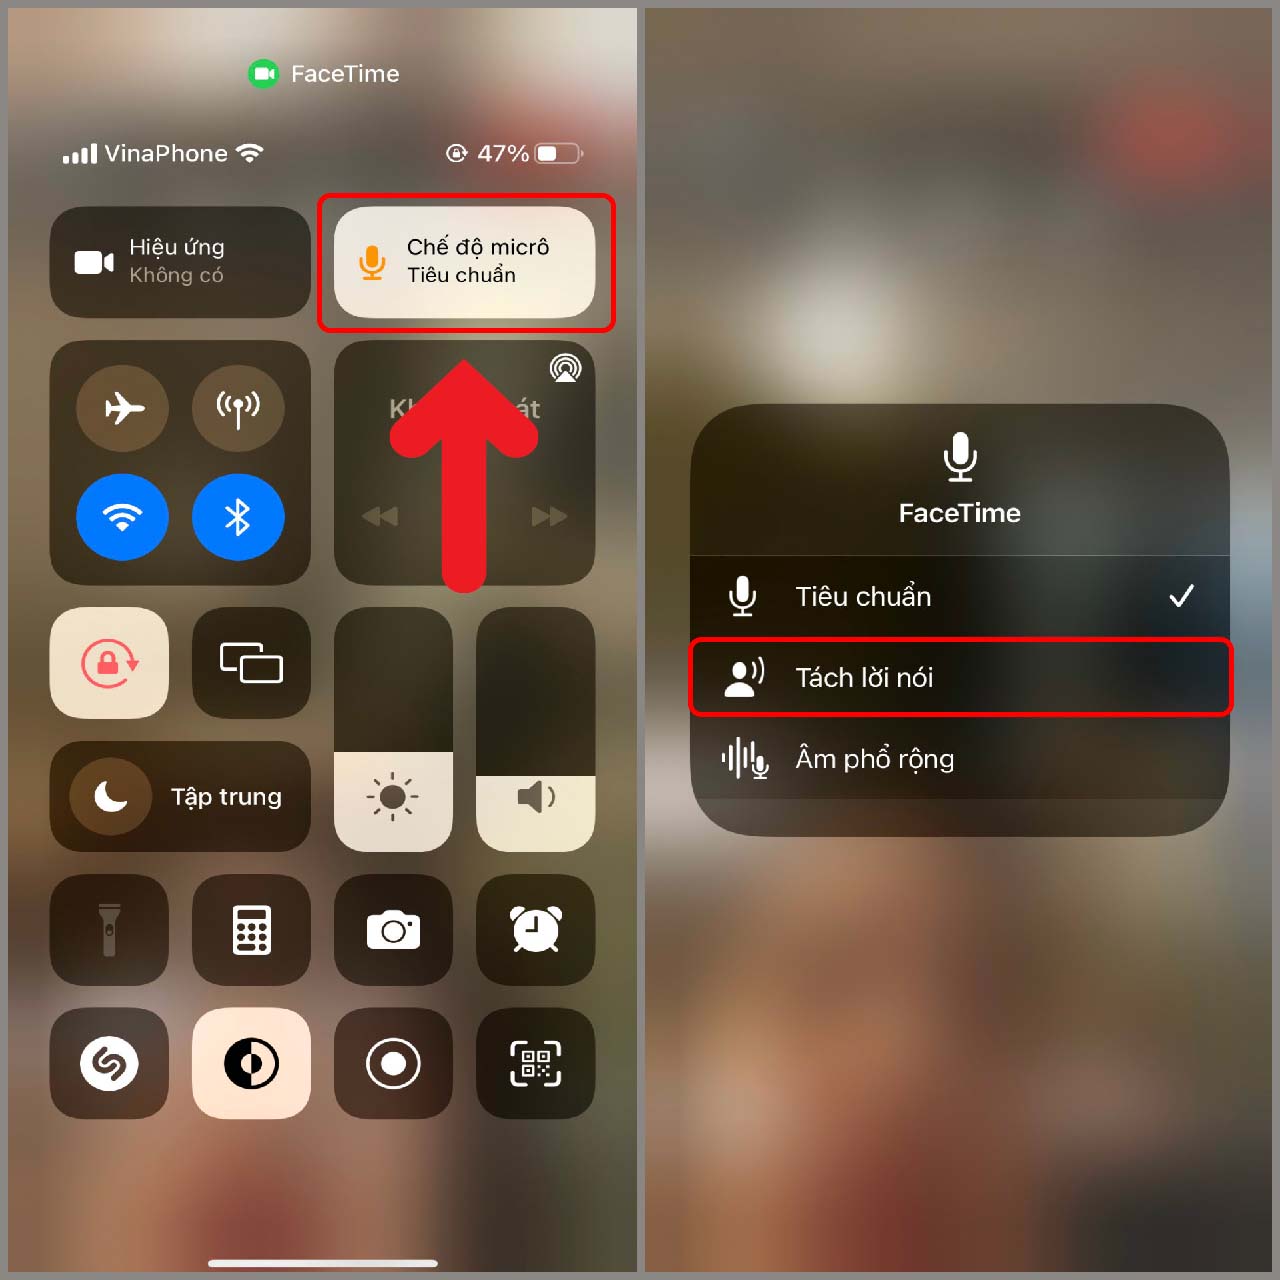 FaceTime là tính năng vô cùng hữu ích của iPhone, nhưng nếu bạn muốn thay đổi âm thanh FaceTime có thể hơi khó khăn. Tuy nhiên, cài đặt âm thanh FaceTime iPhone ngay bây giờ sẽ giúp cho bạn có thể thỏa sức tùy chỉnh âm thanh theo ý muốn và trải nghiệm FaceTime tuyệt vời hơn.